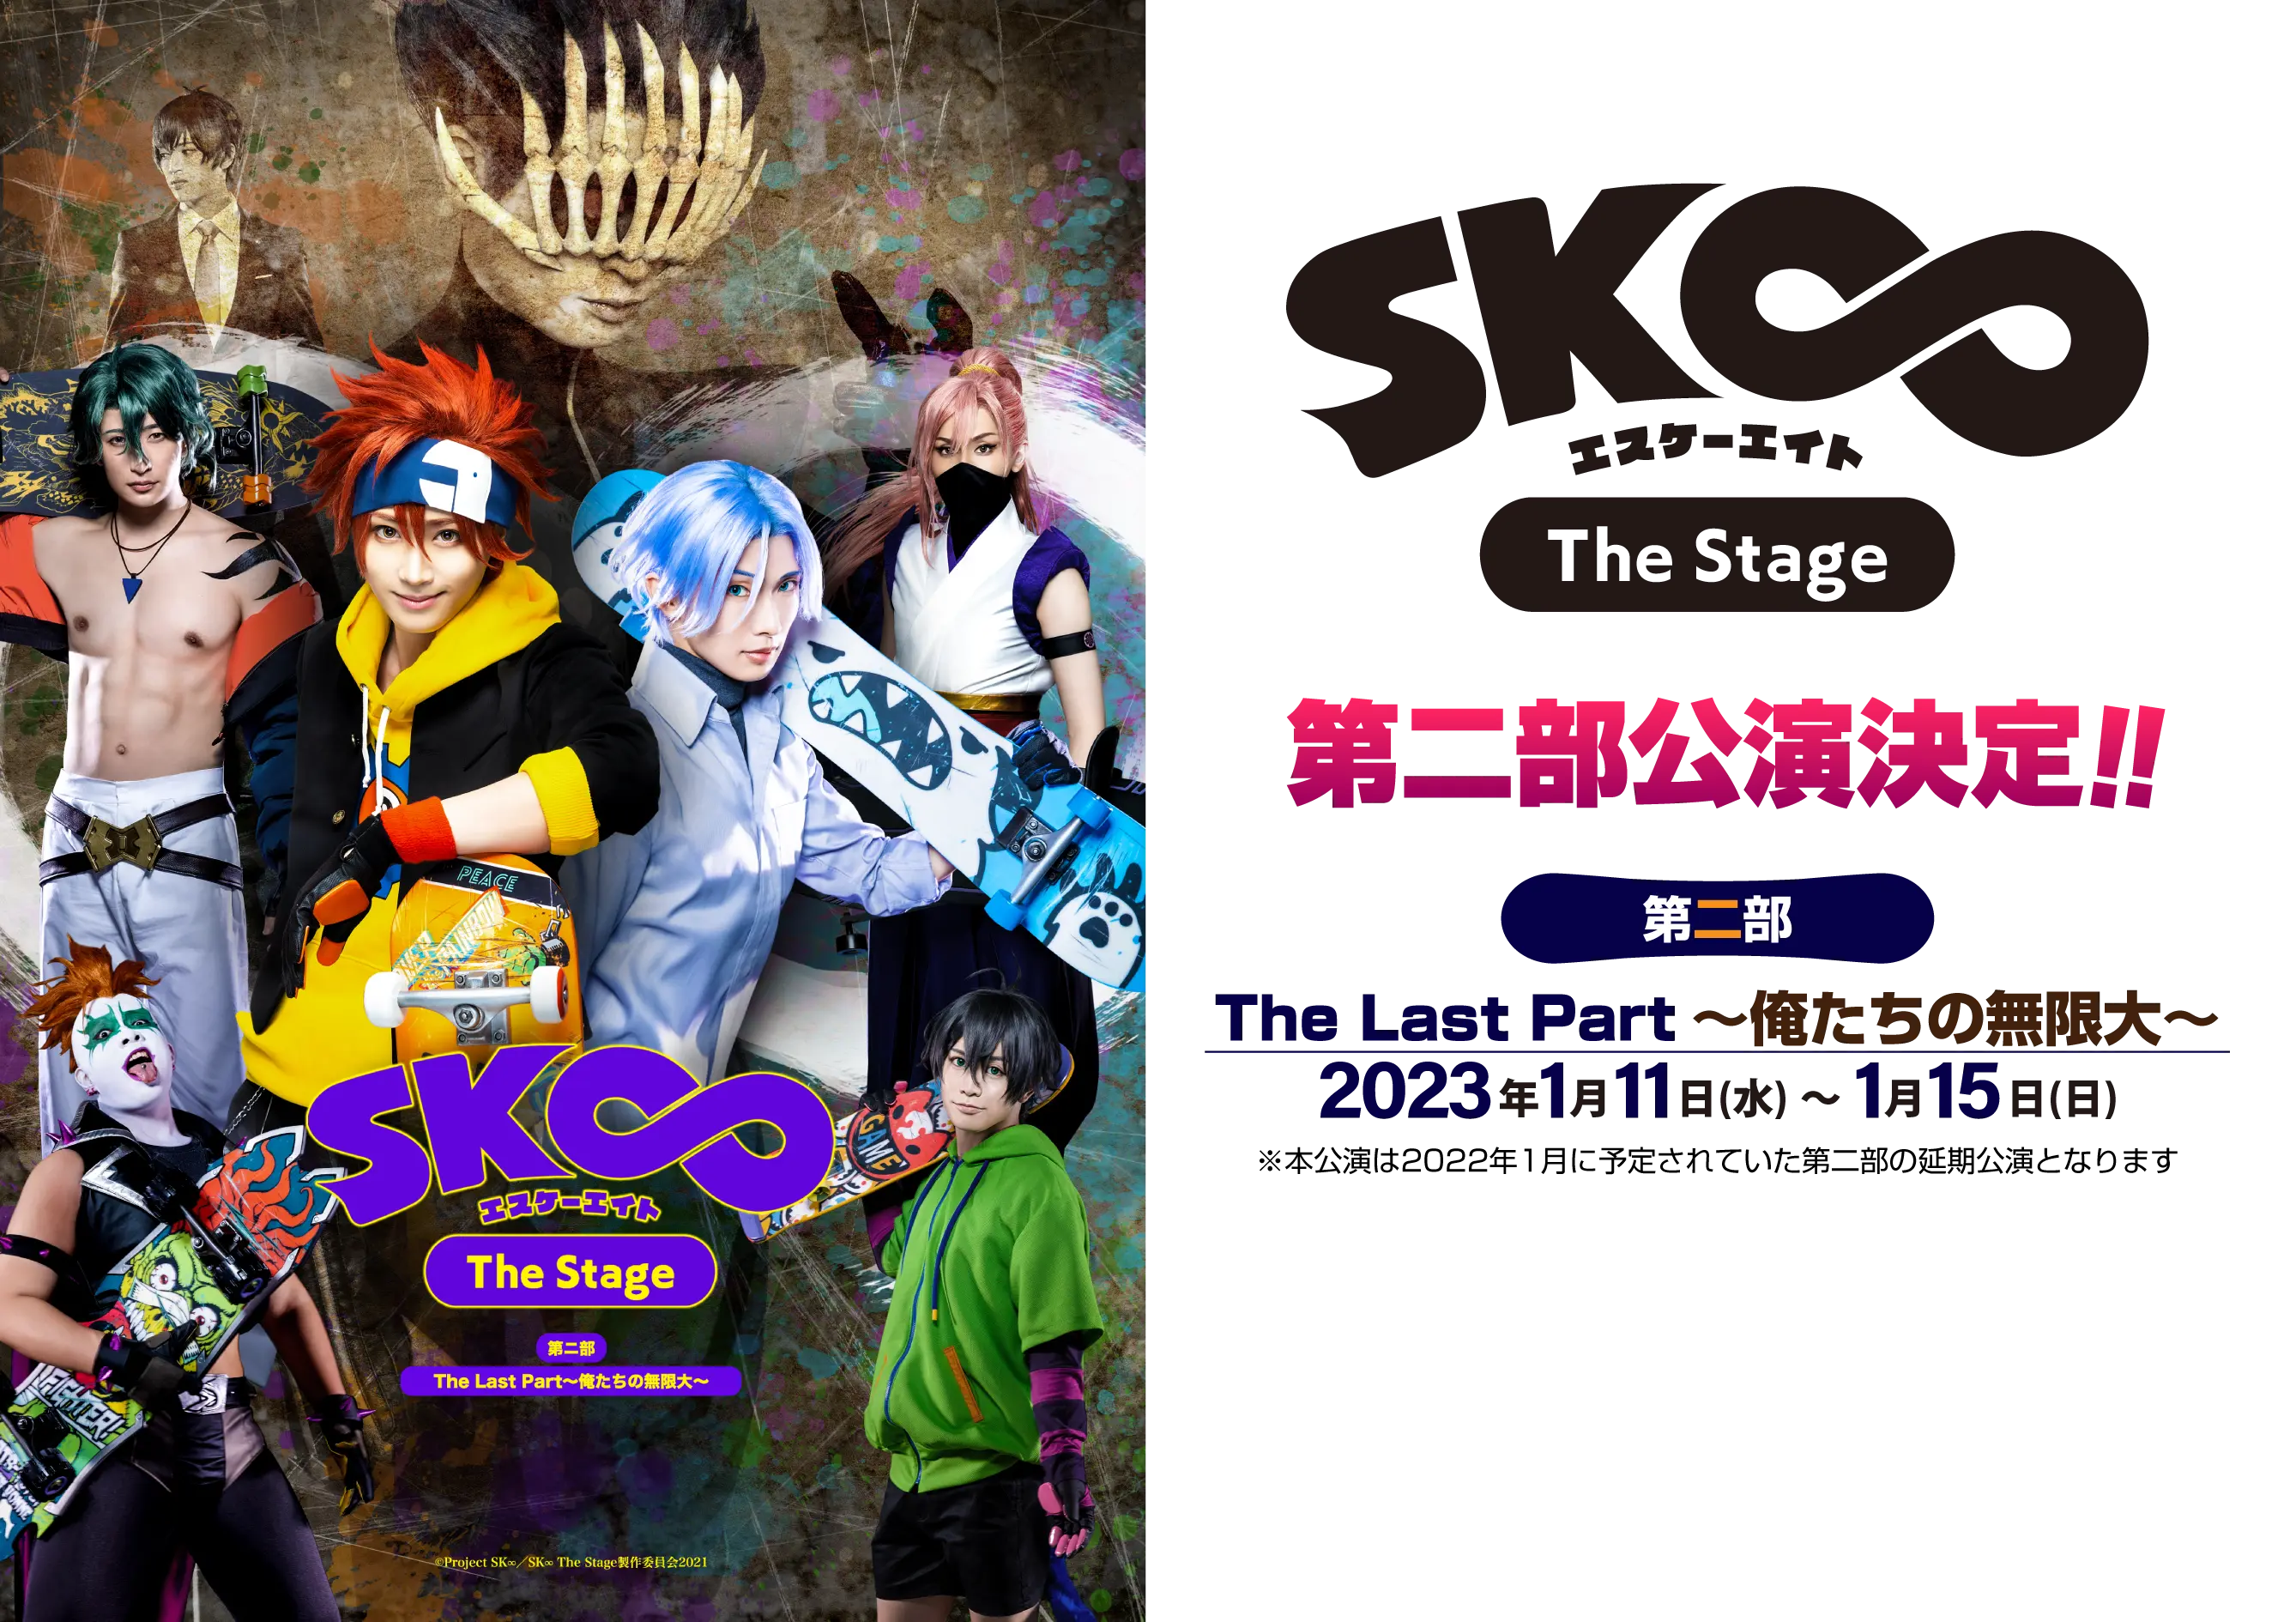 舞台 SK∞ エスケーエイト The Stage 第一部 Blu-ray - ブルーレイ